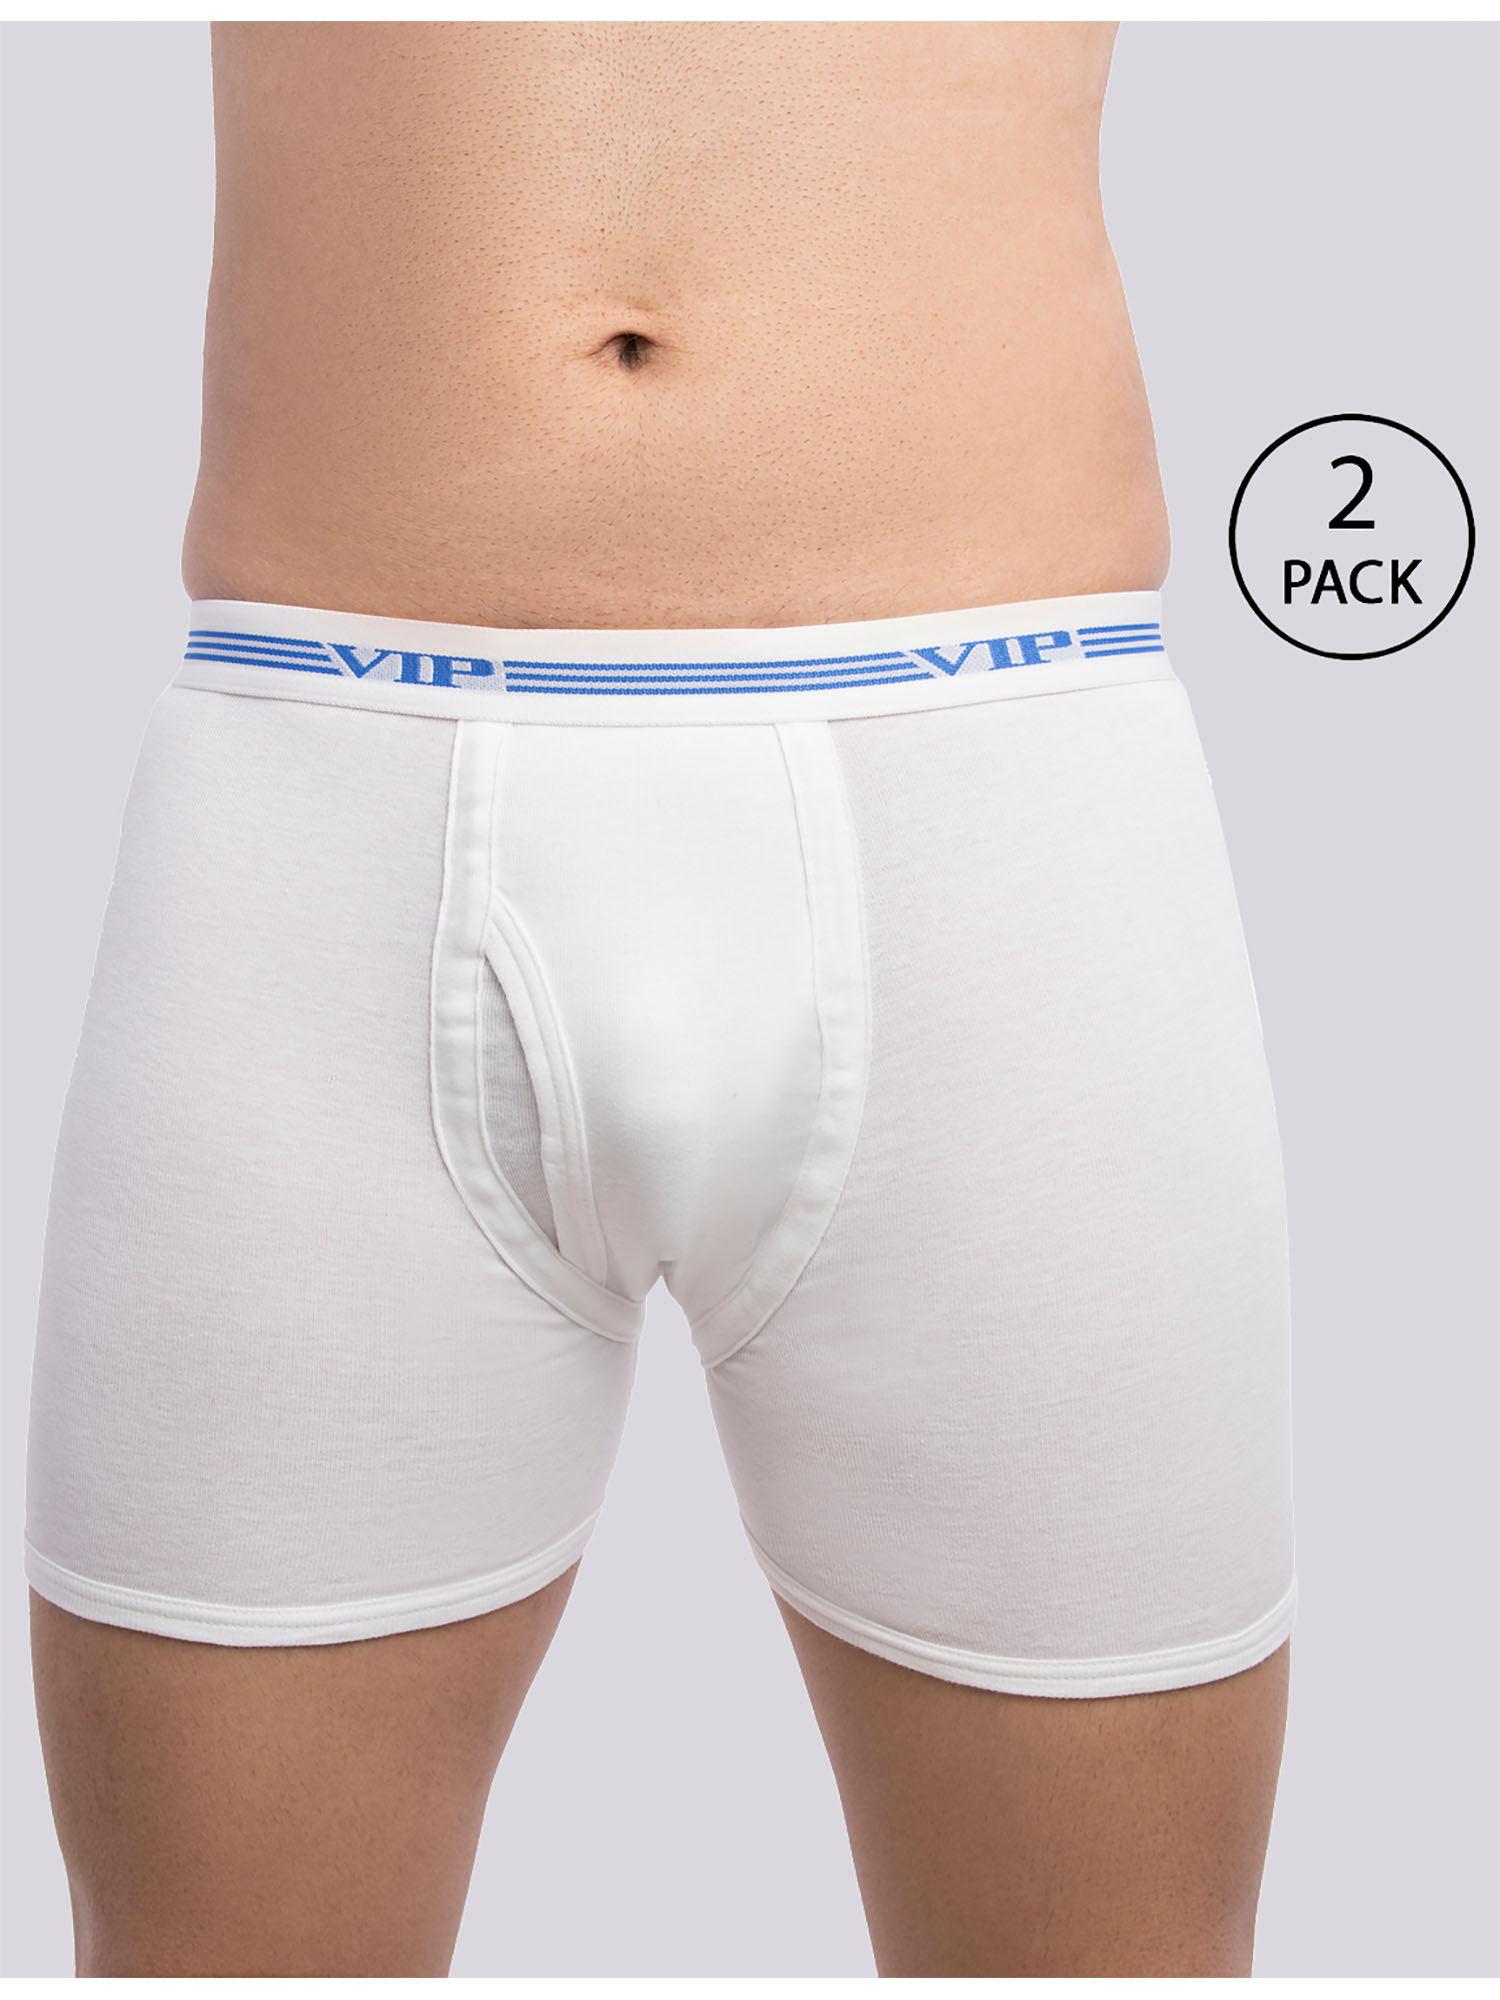 men's advanta solid white 100% cotton rib trunks (pack of 2)